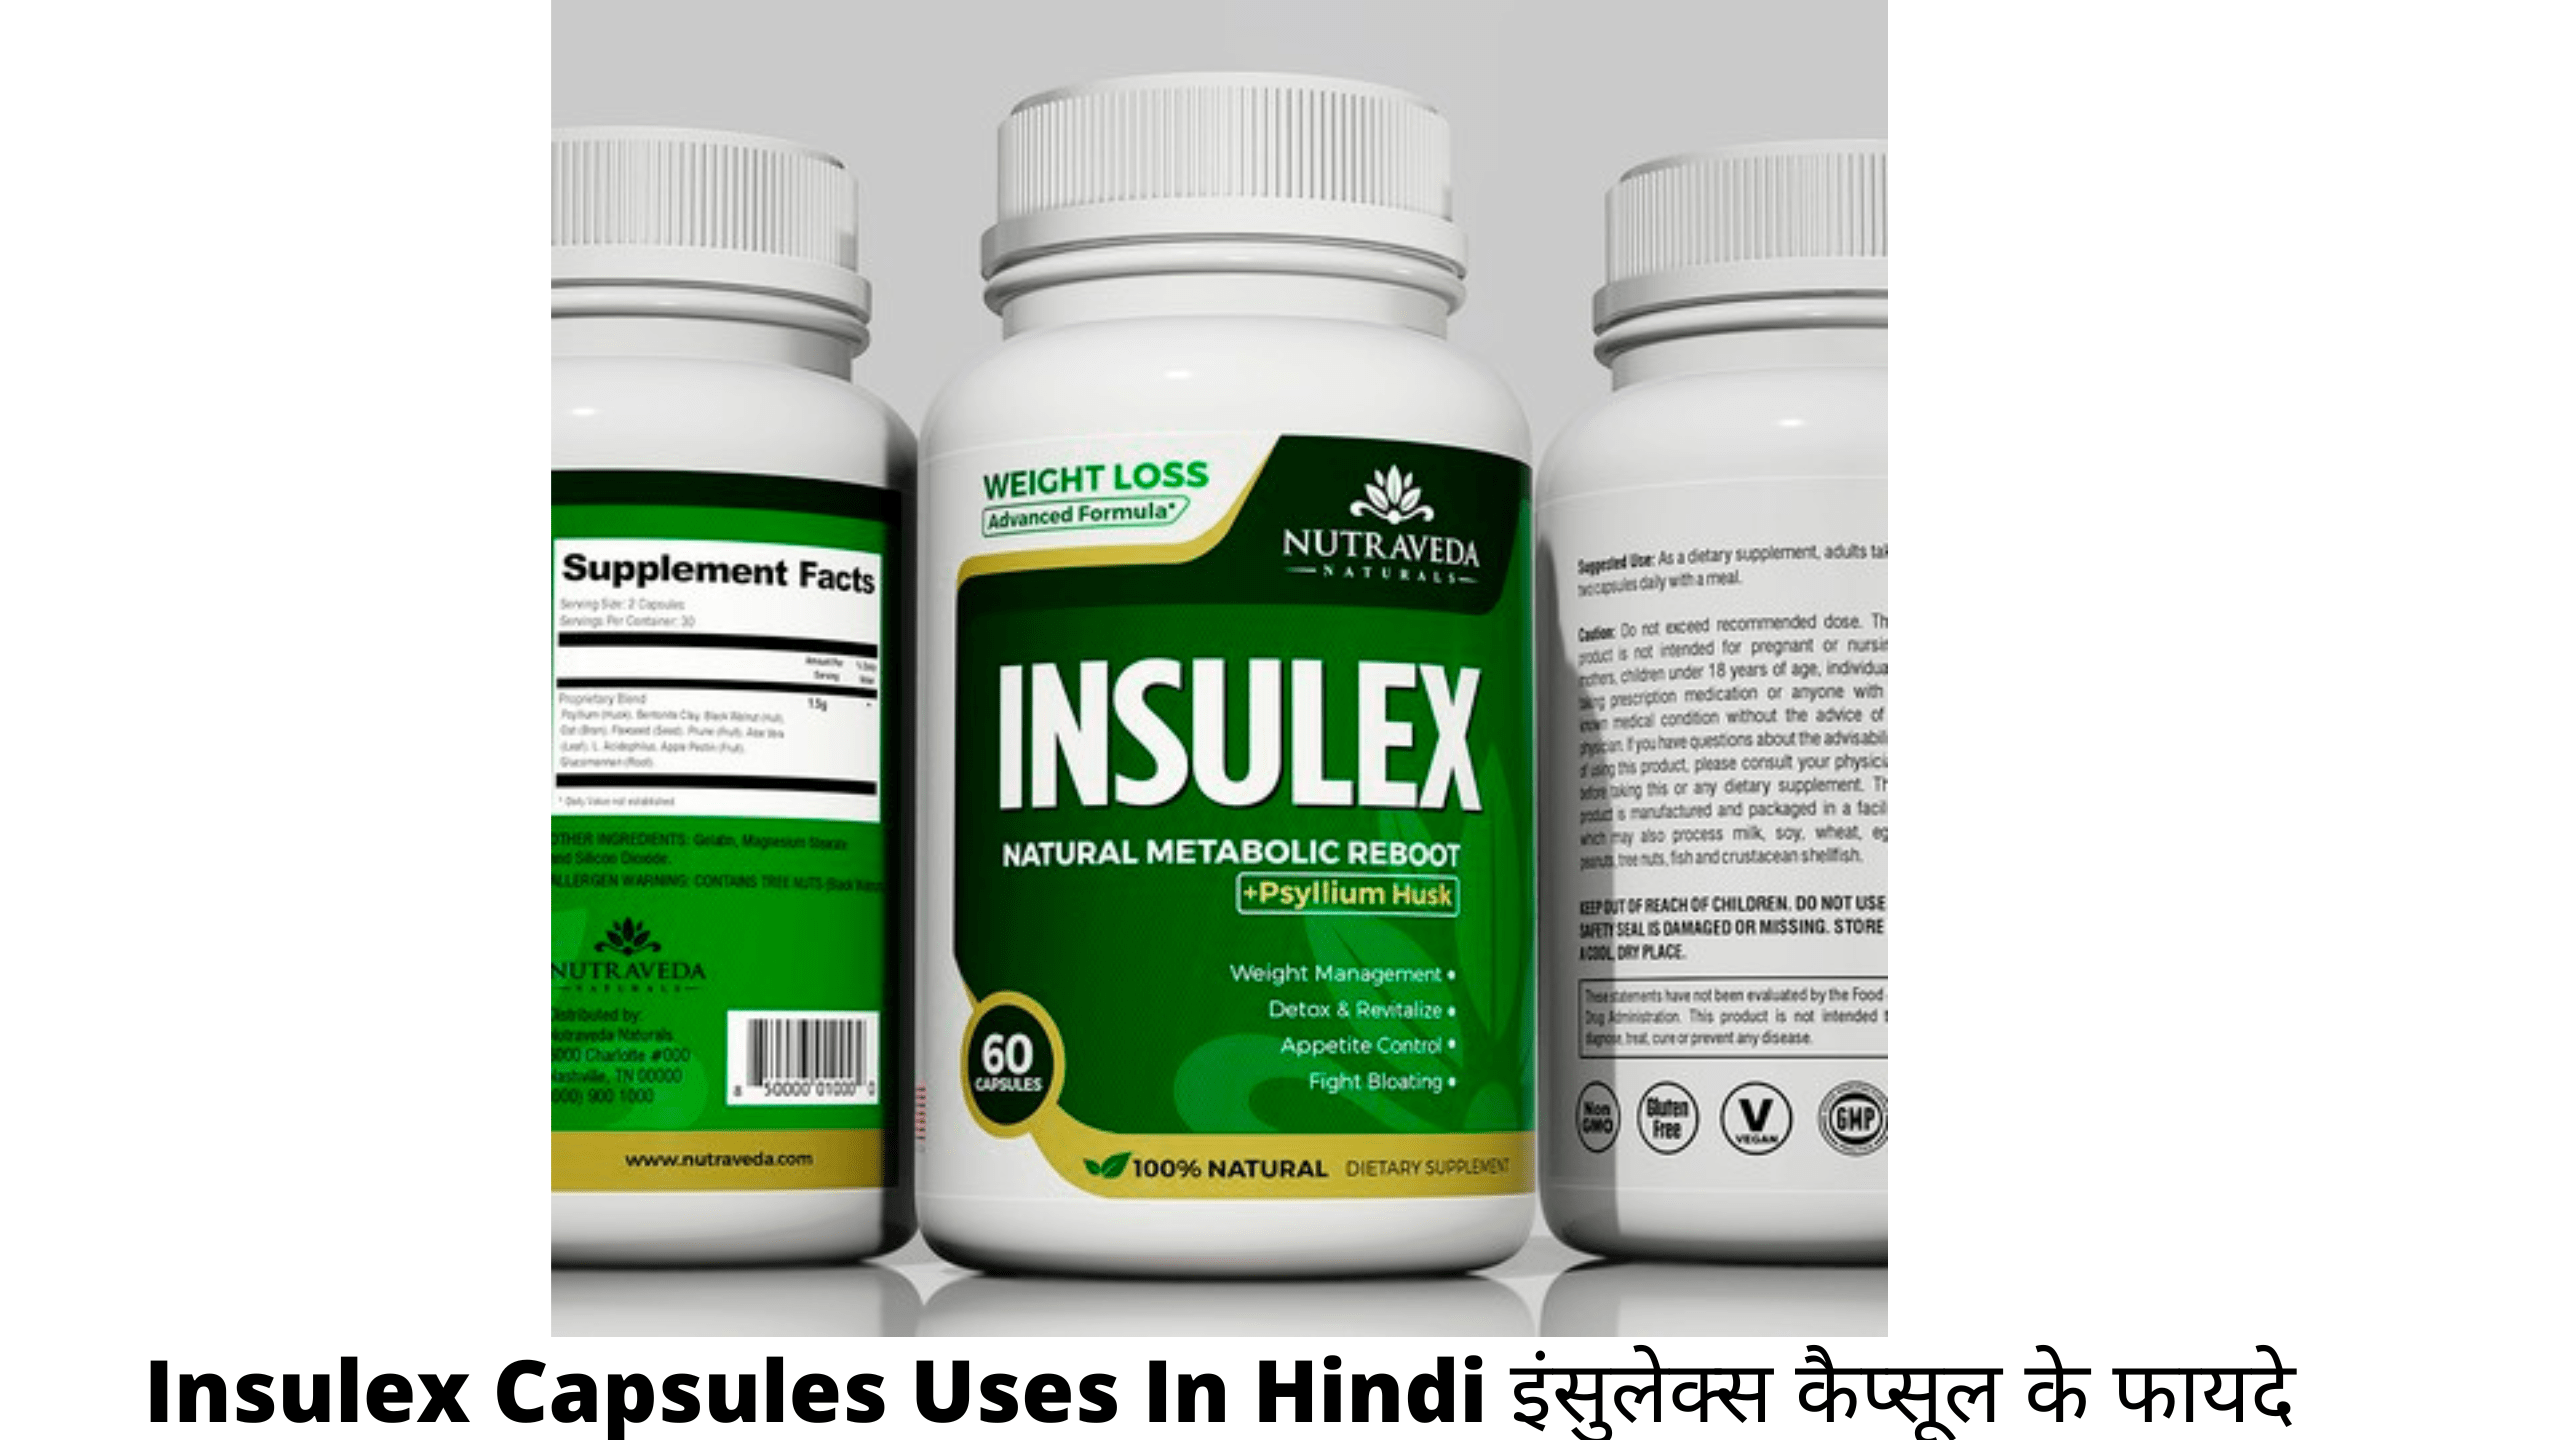 Insulex Capsules Uses In Hindi